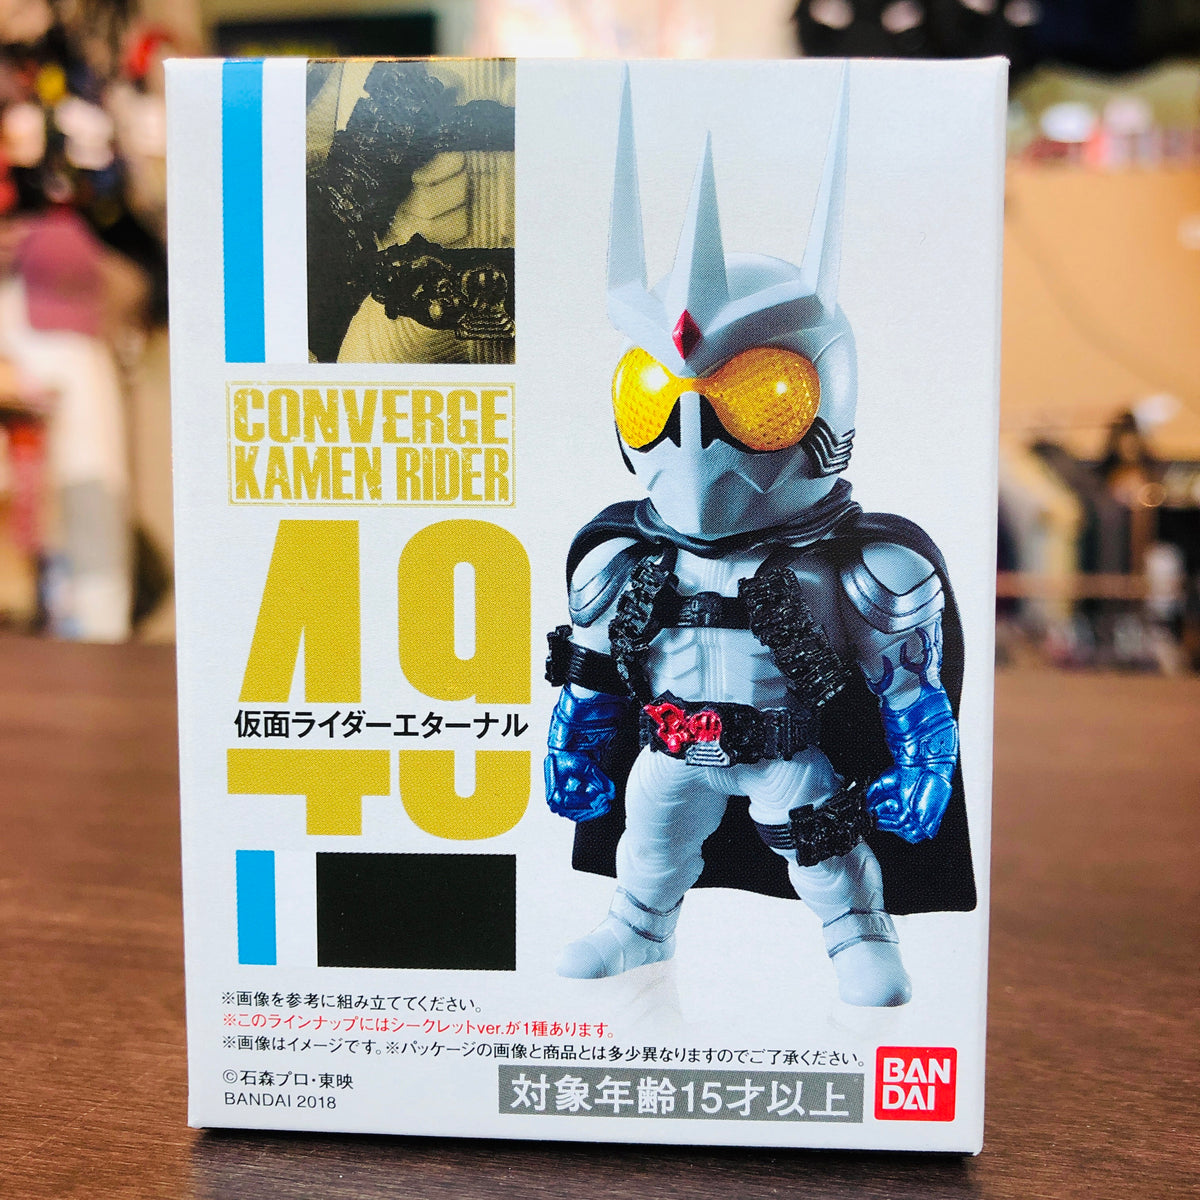 Kamen Rider Converge #9 - Masked Rider Eternal 49 – Tokyo Station